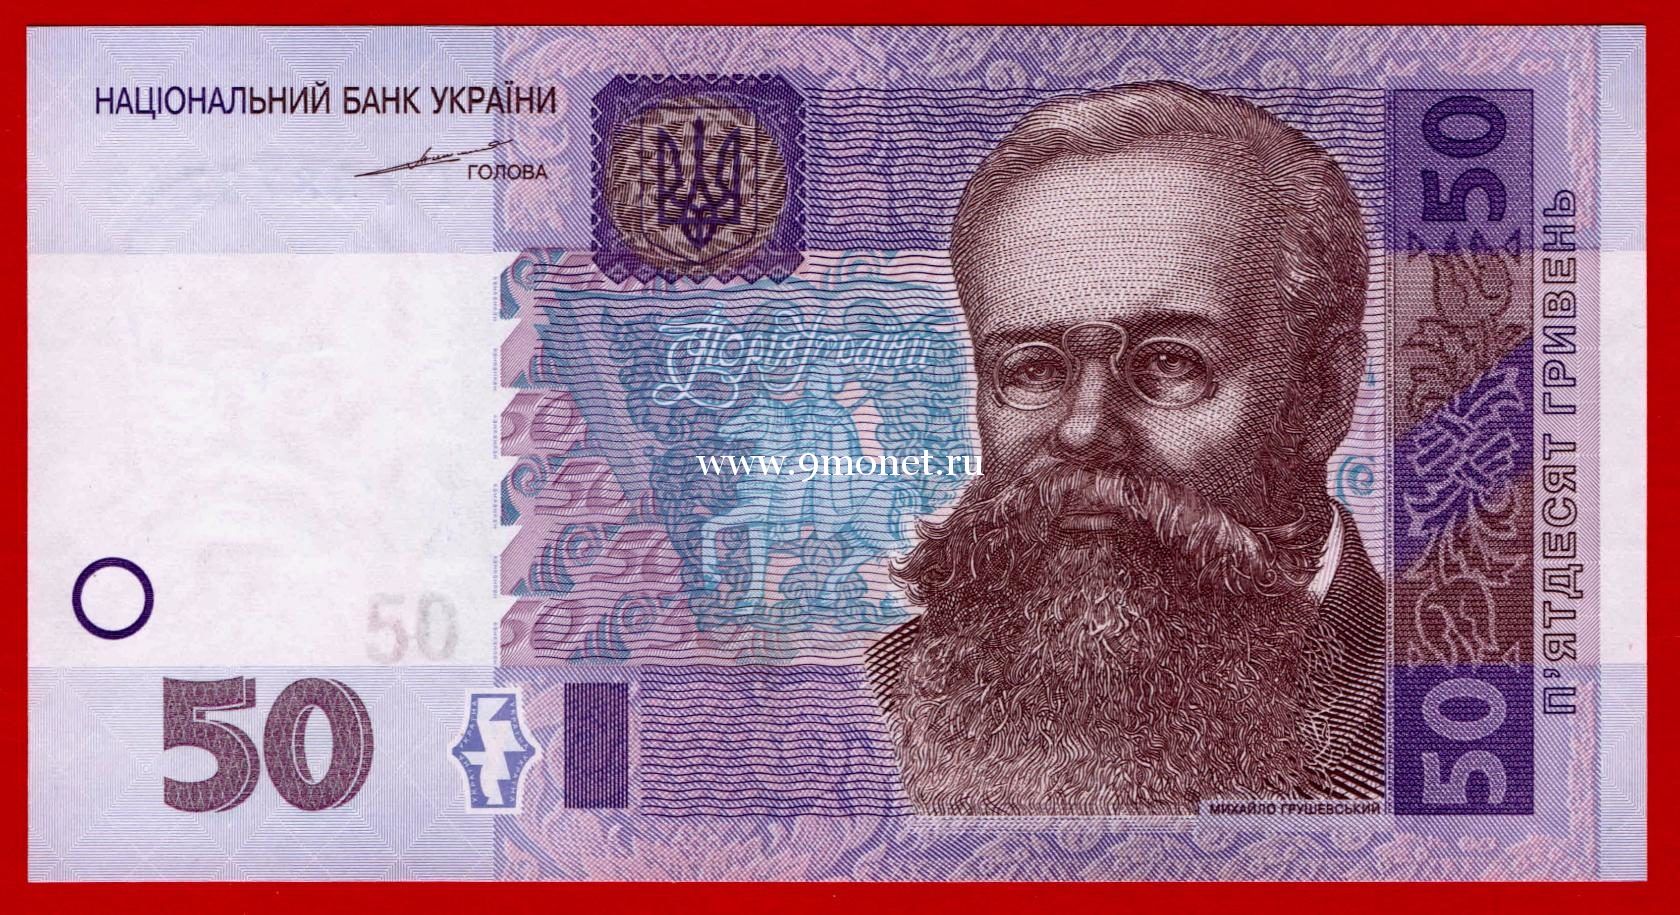 2004 год. Украина. Банкнота 50 гривен.